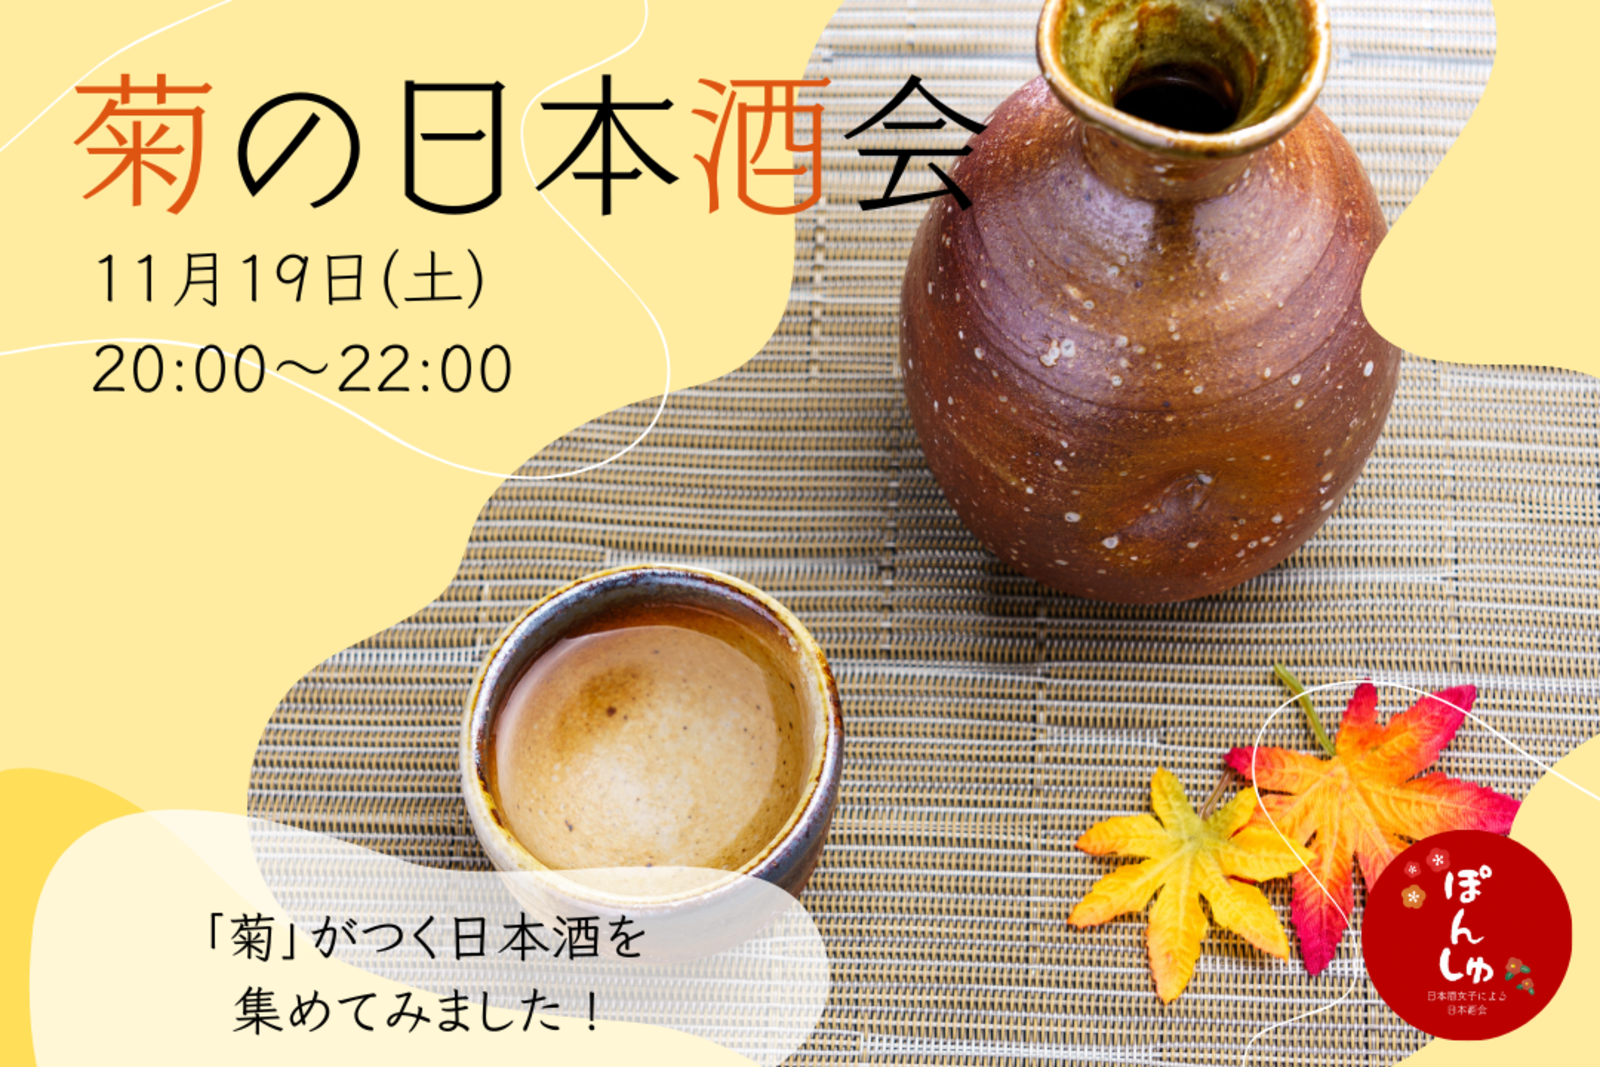 【秋の日本酒会🍶】「菊」がついた日本酒を飲み比べしよう✨